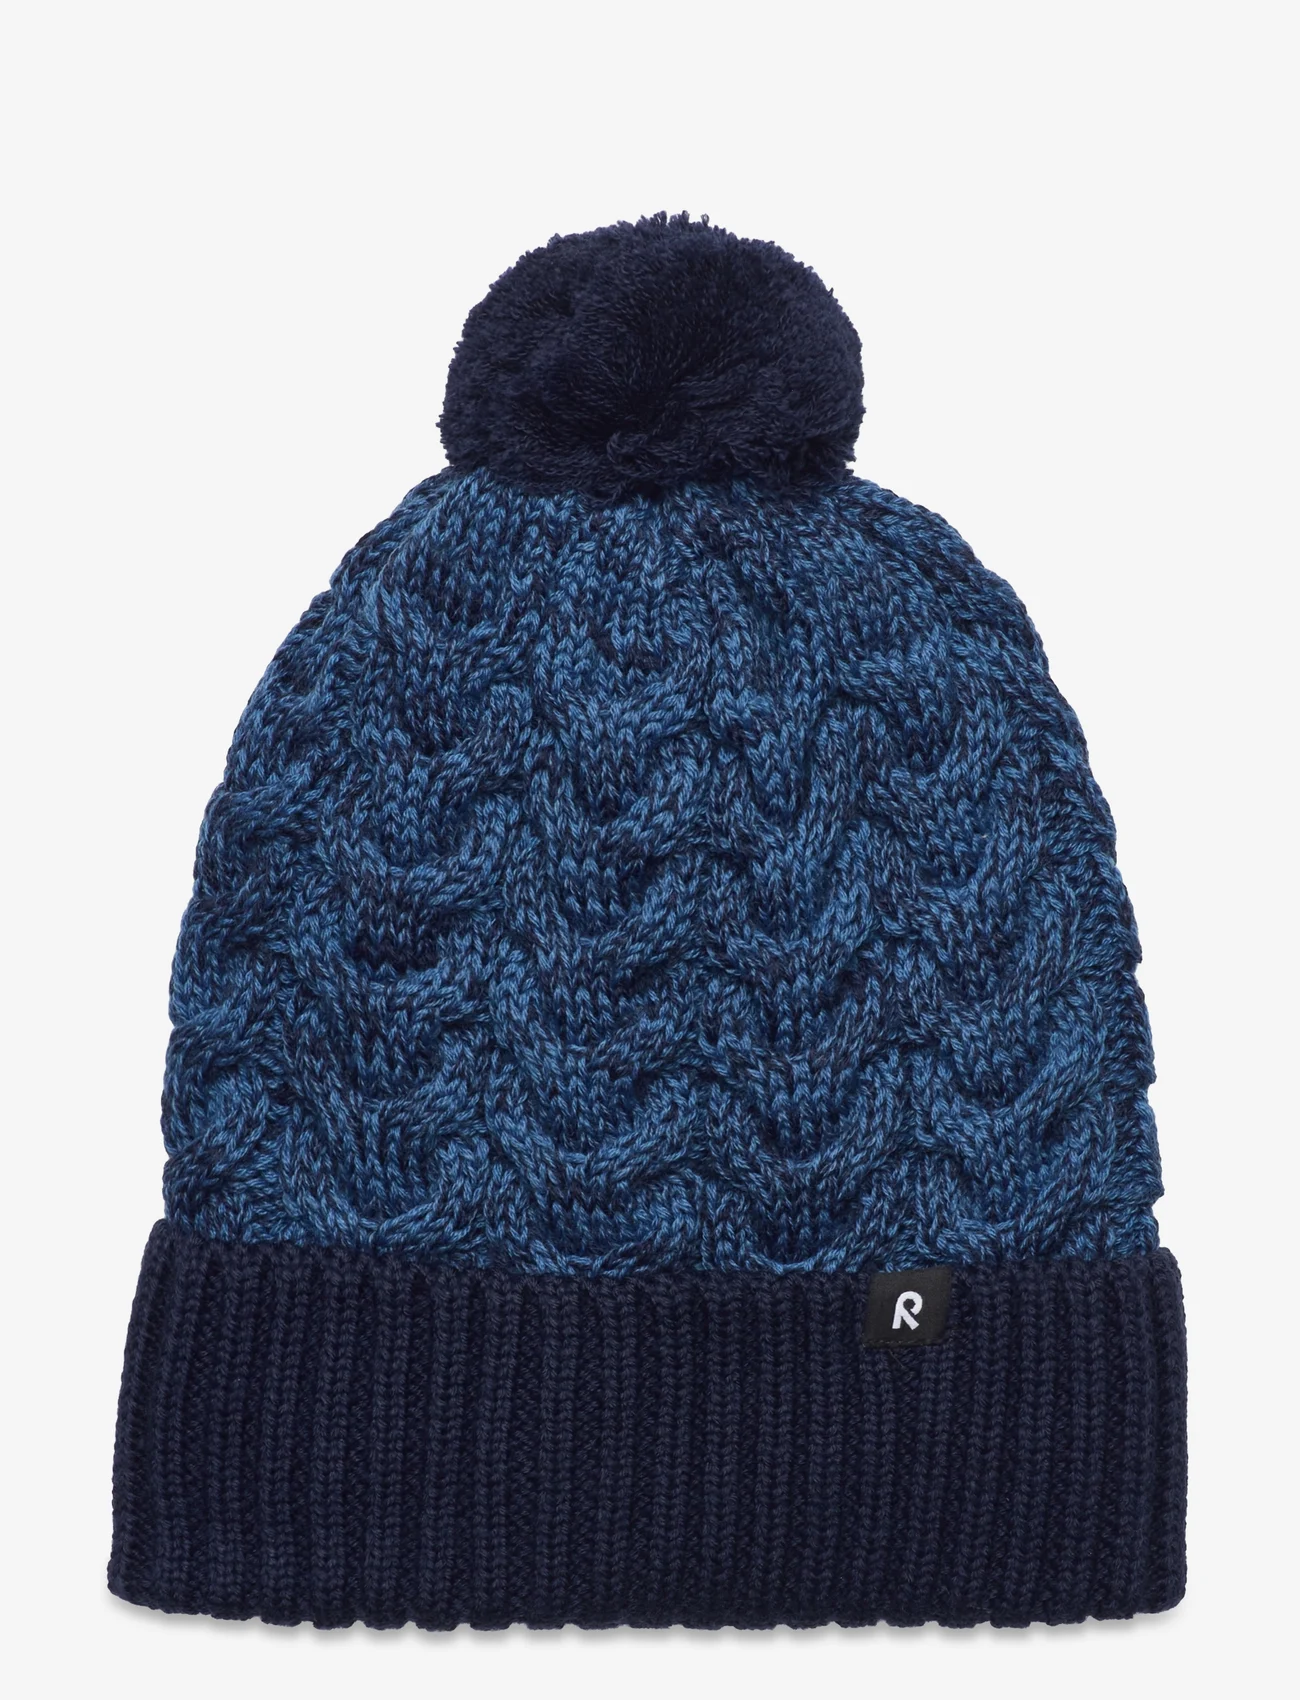 Reima - Beanie, Routii - winter hats - navy - 0